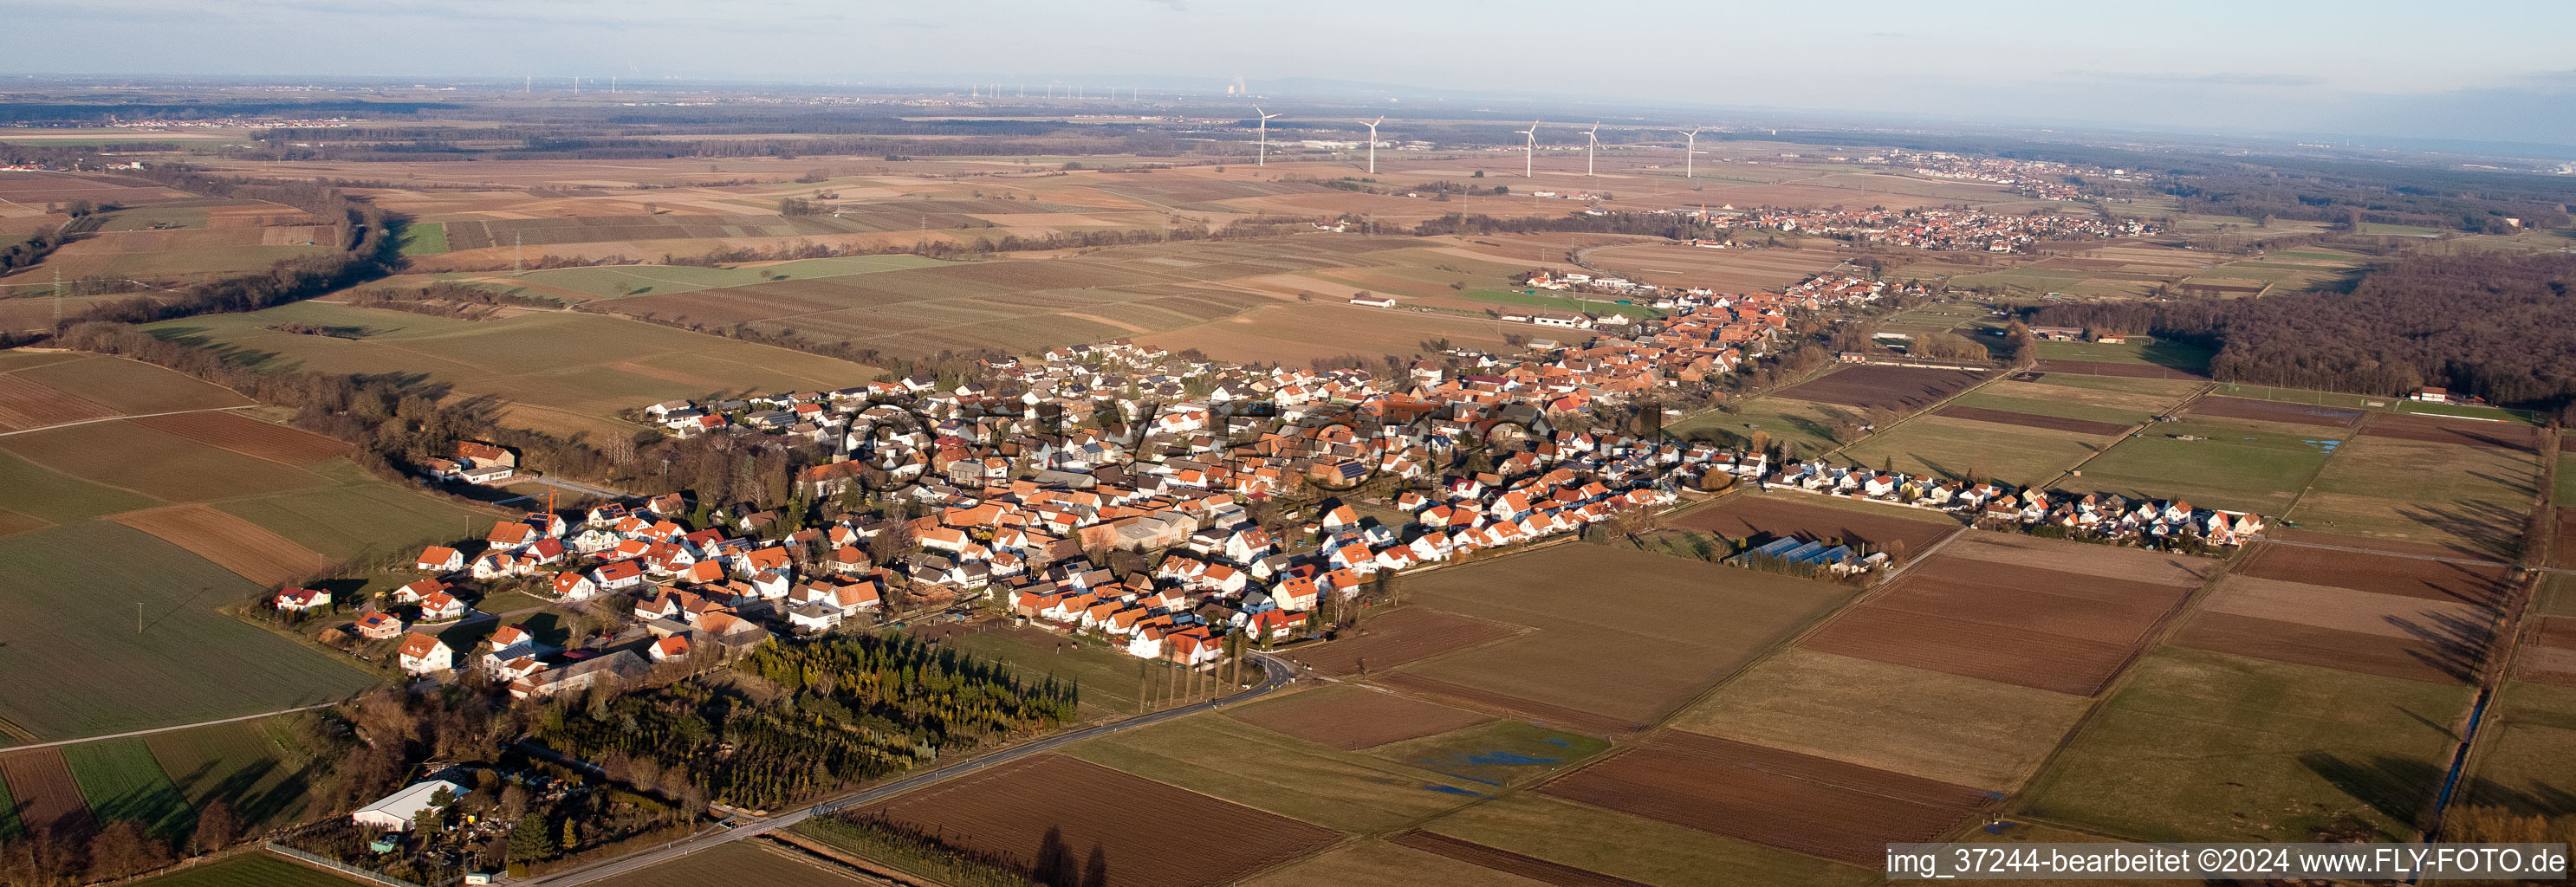 Panorama Perspektive Dorf - Ansicht am Rande von landwirtschaftlichen Feldern und Nutzflächen in Freckenfeld im Bundesland Rheinland-Pfalz, Deutschland